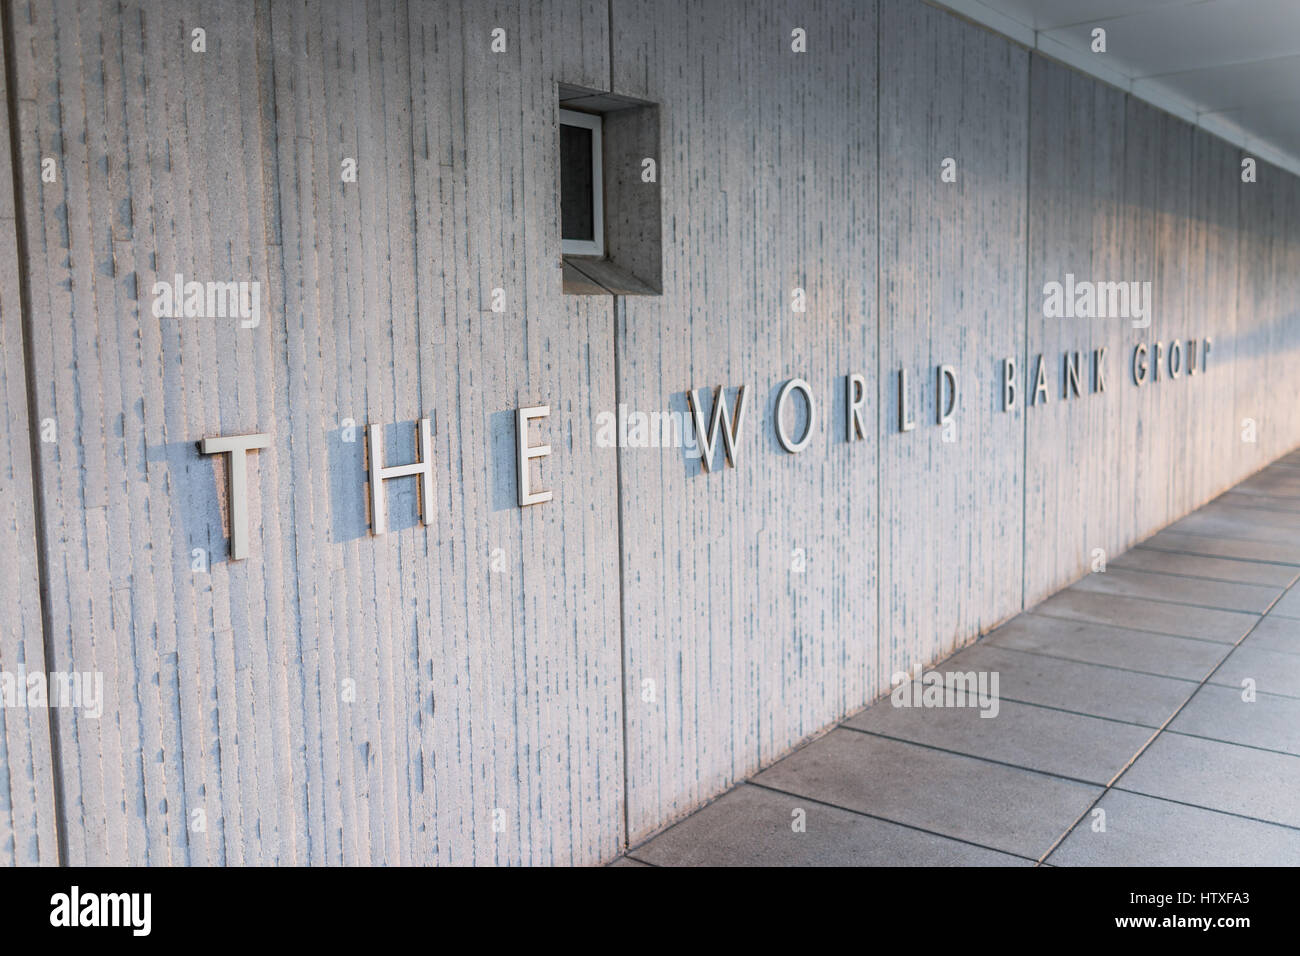 Washington DC, USA - 4. März 2017: Weltbankgruppe Schild am Gebäude außen Stockfoto